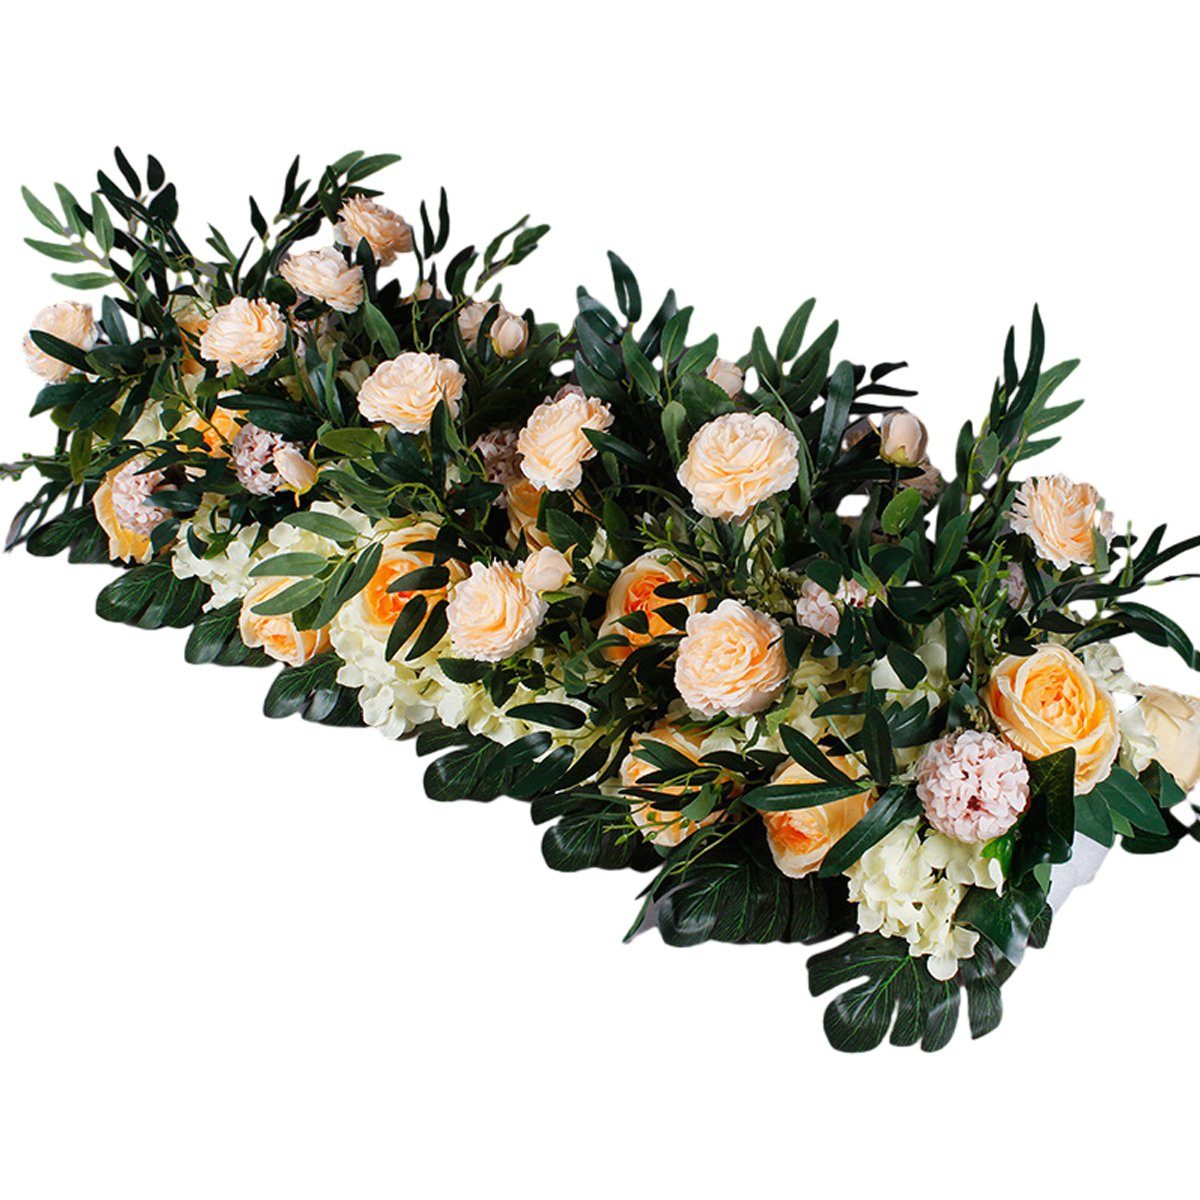 Kunstblume Künstliche Blumen Pflanzen für Hotel Hochzeit Zuhause Garten Handwerk, Rwoythk